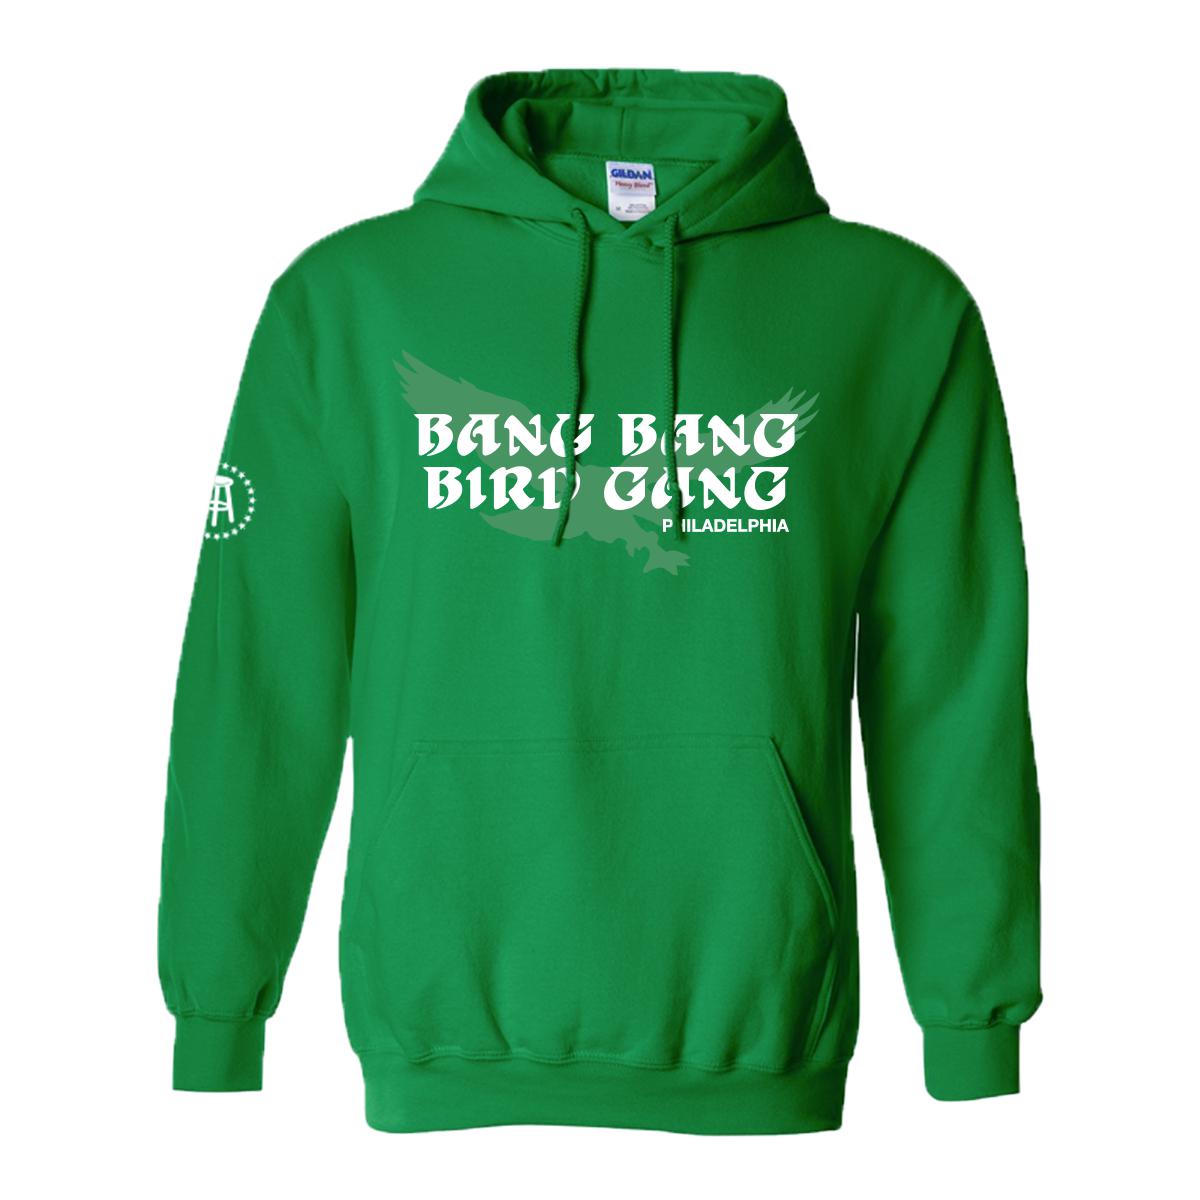 Bang Bang Bird Gang Hoodie-Hoodies-Barstool Sports-Green-S-Barstool Sports